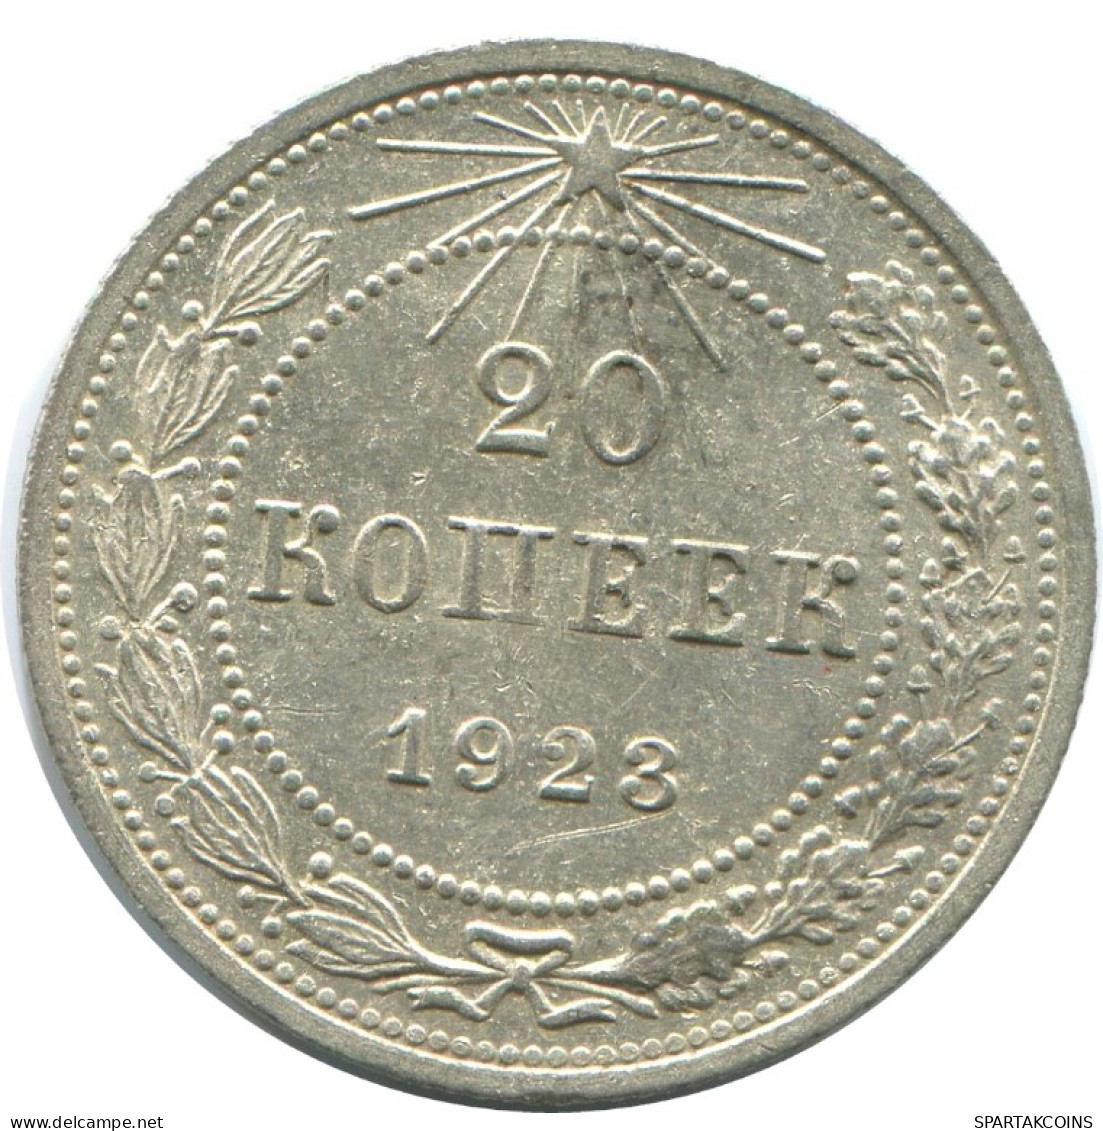 20 KOPEKS 1923 RUSIA RUSSIA RSFSR PLATA Moneda HIGH GRADE #AF570.4.E.A - Russland